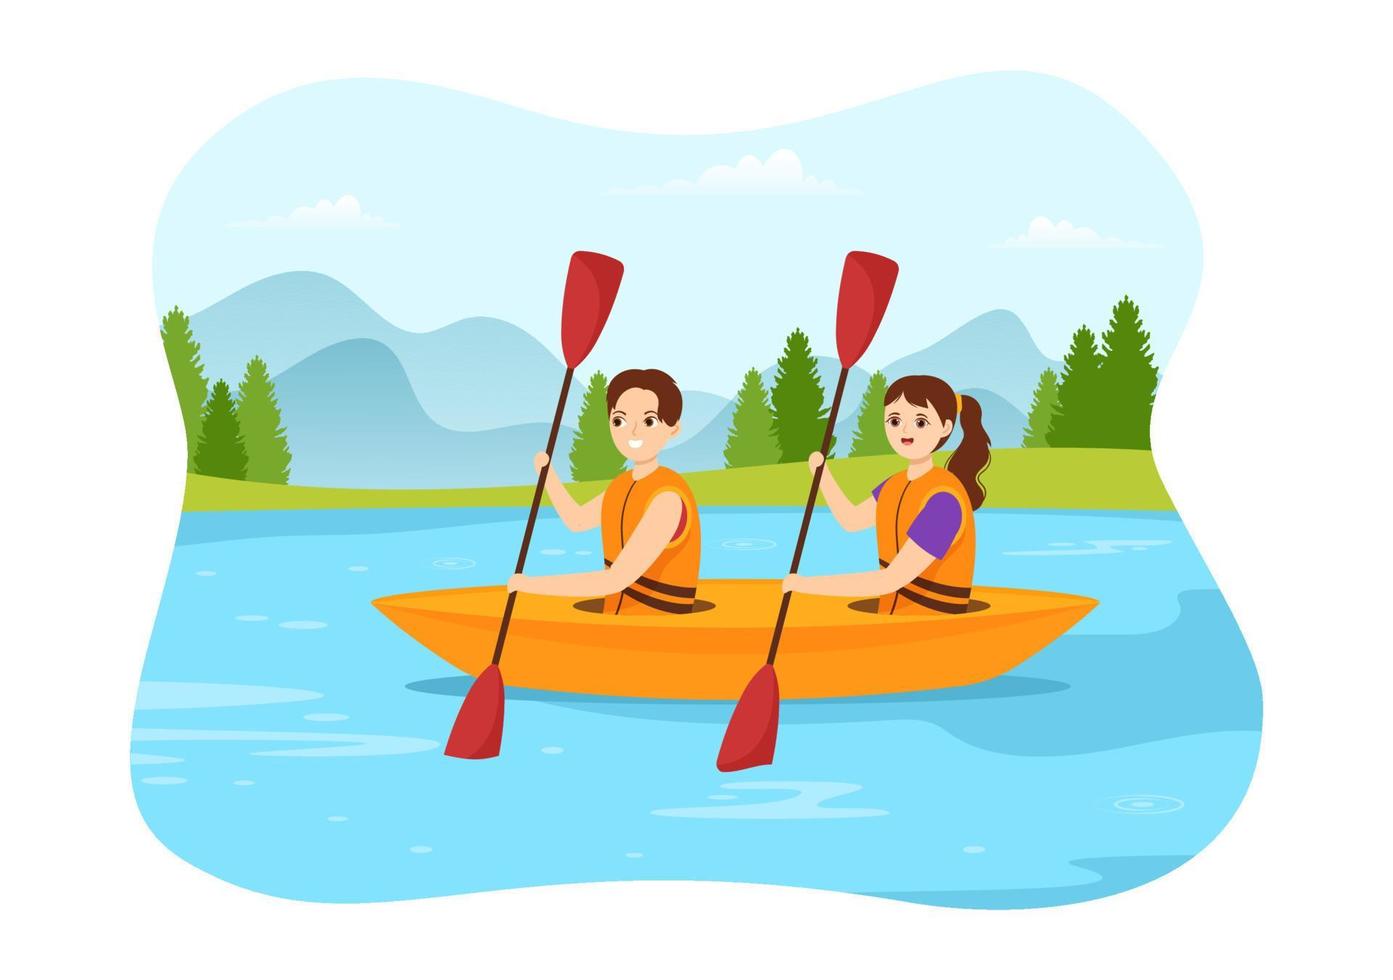 gente disfrutando de la ilustración de remo con canoa y navegando en un río o lago en una plantilla dibujada a mano de dibujos animados planos de deportes acuáticos activos vector